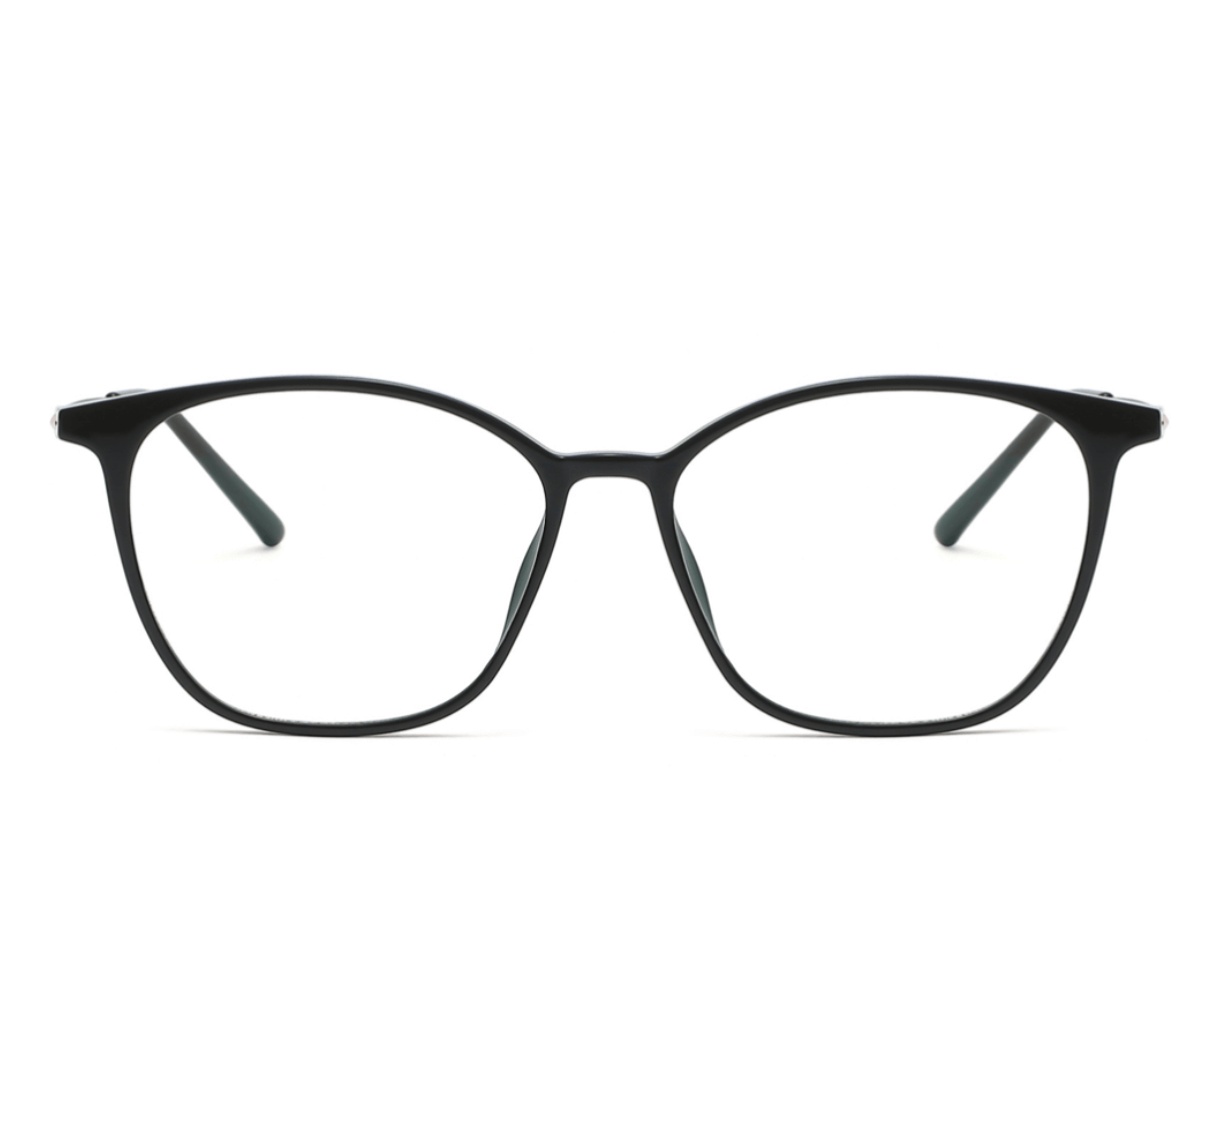 fashion eyewear wholesale men, wholesale eyeglasses, eyeglasses supplier, eyewear manufacturer